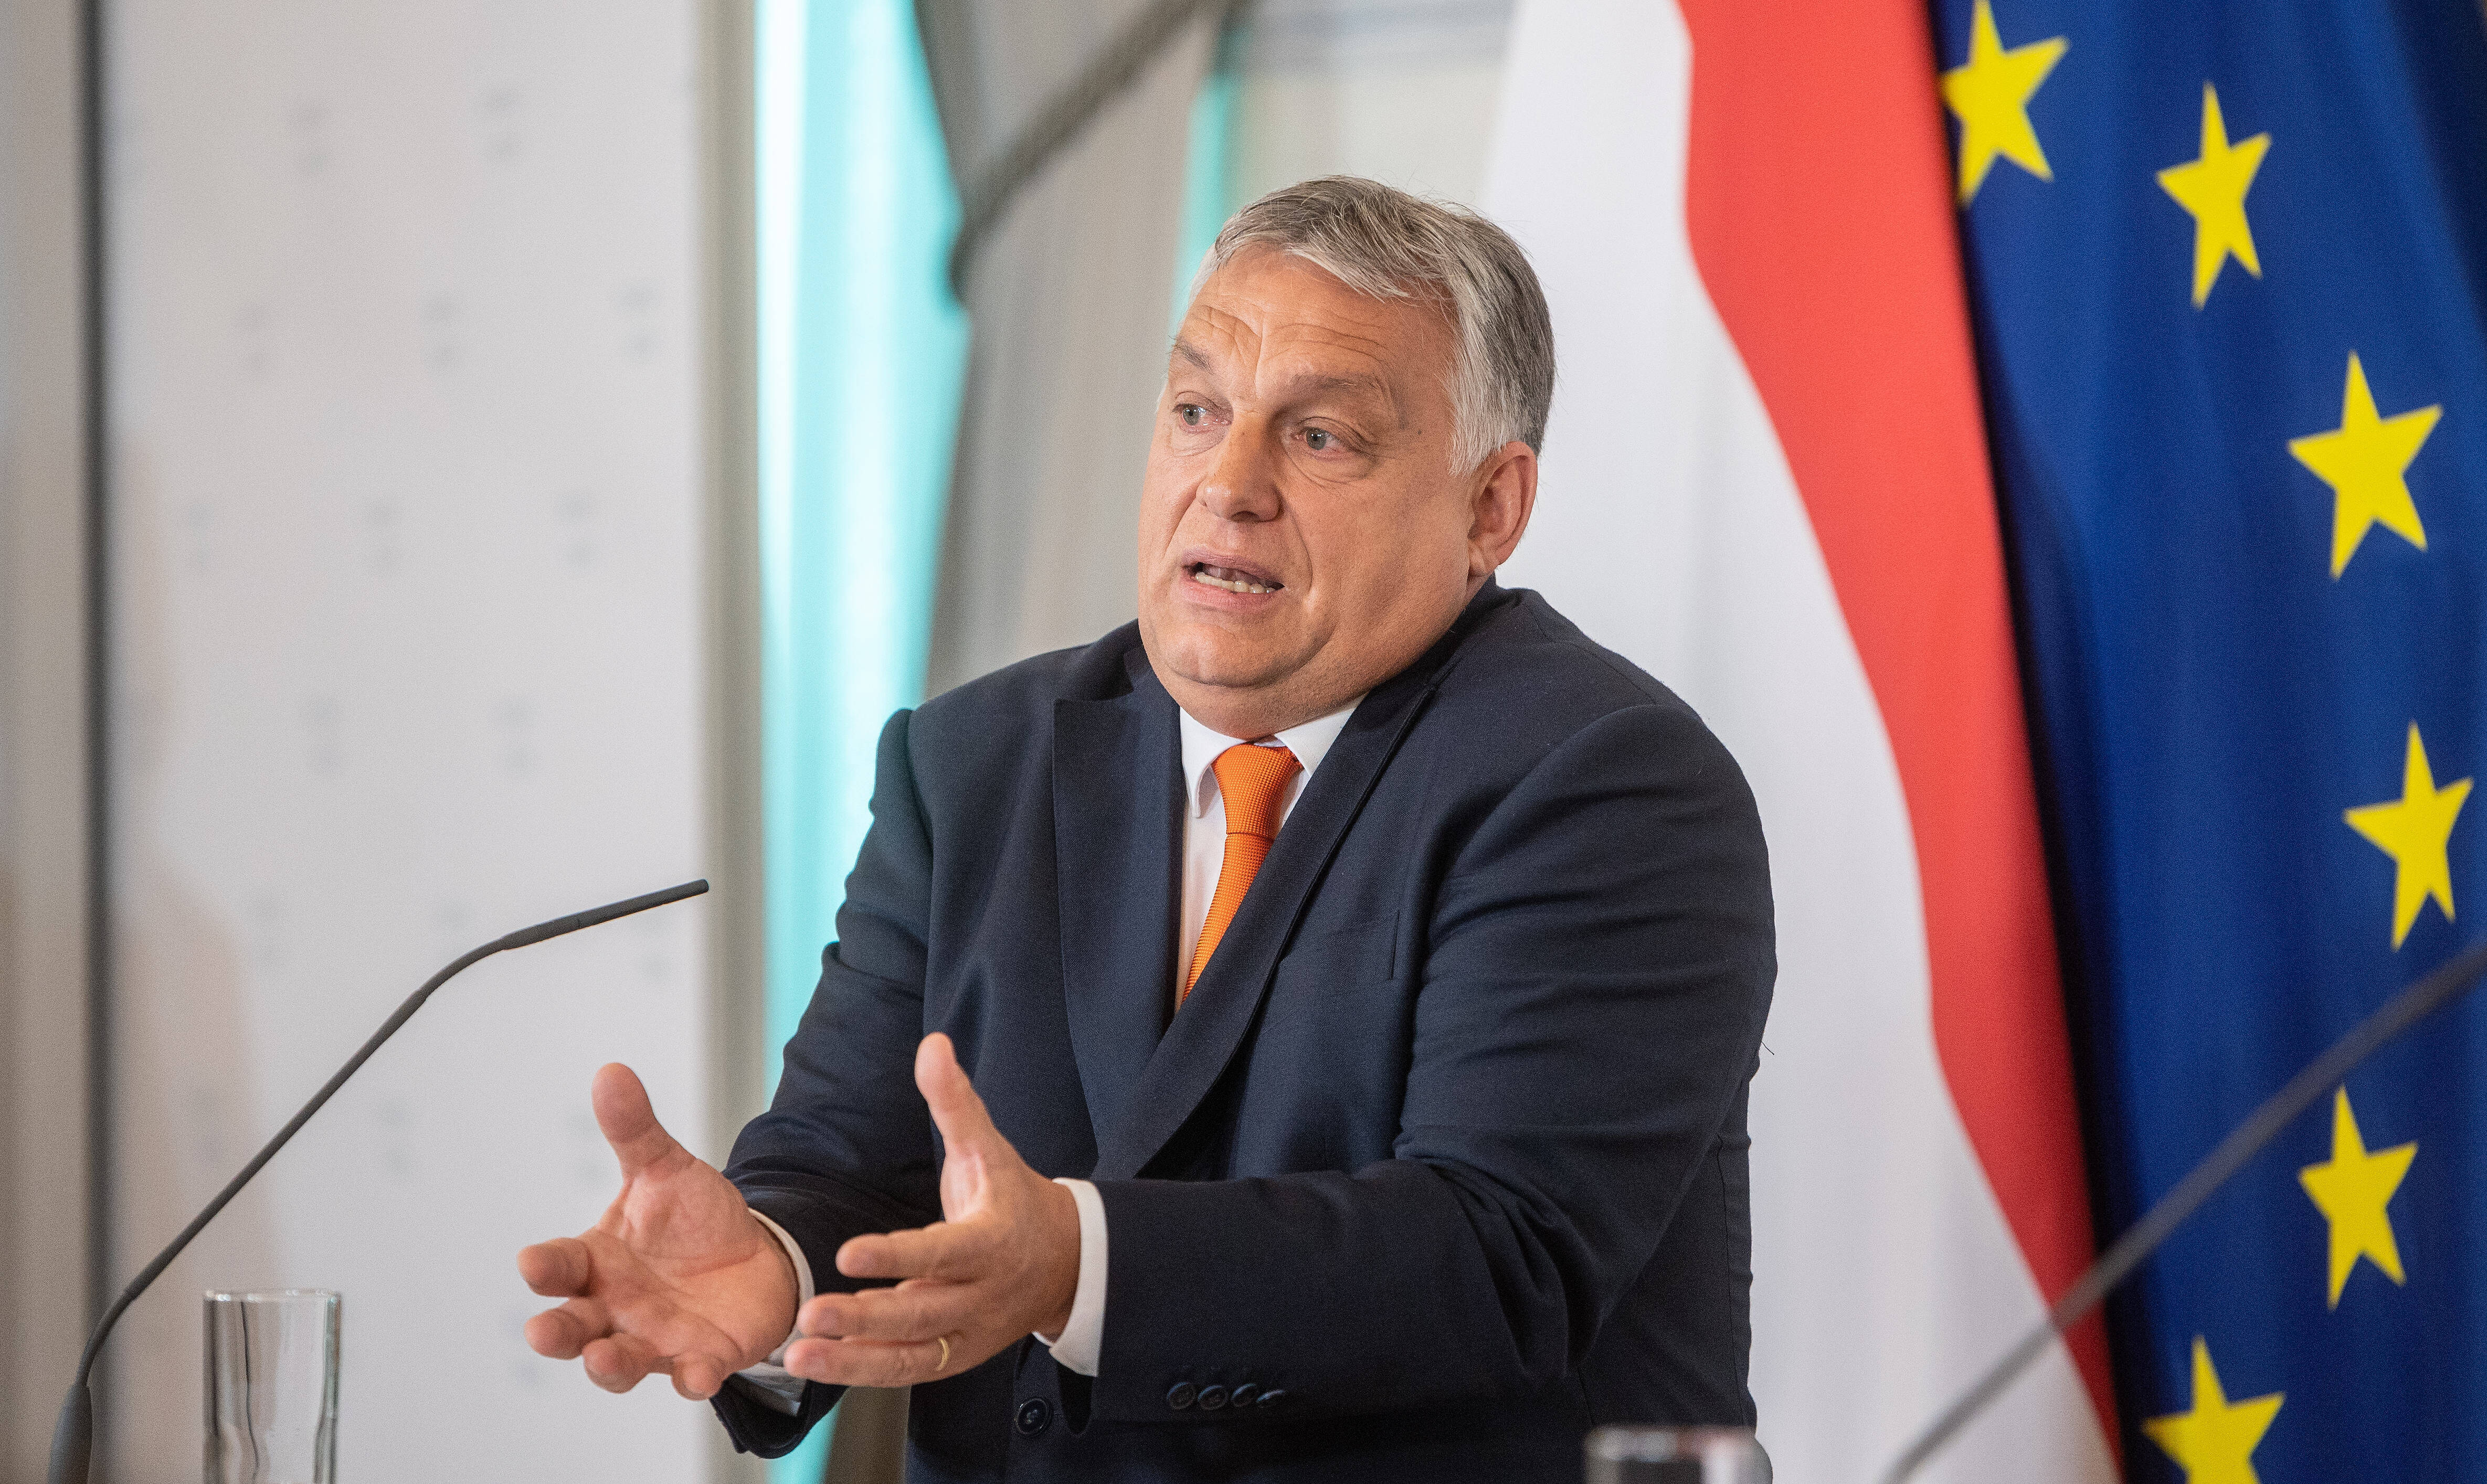 Droht ihm Ungemach? Viktor Orbán muss befürchten, dass EU-Gelder eingefroren werden.